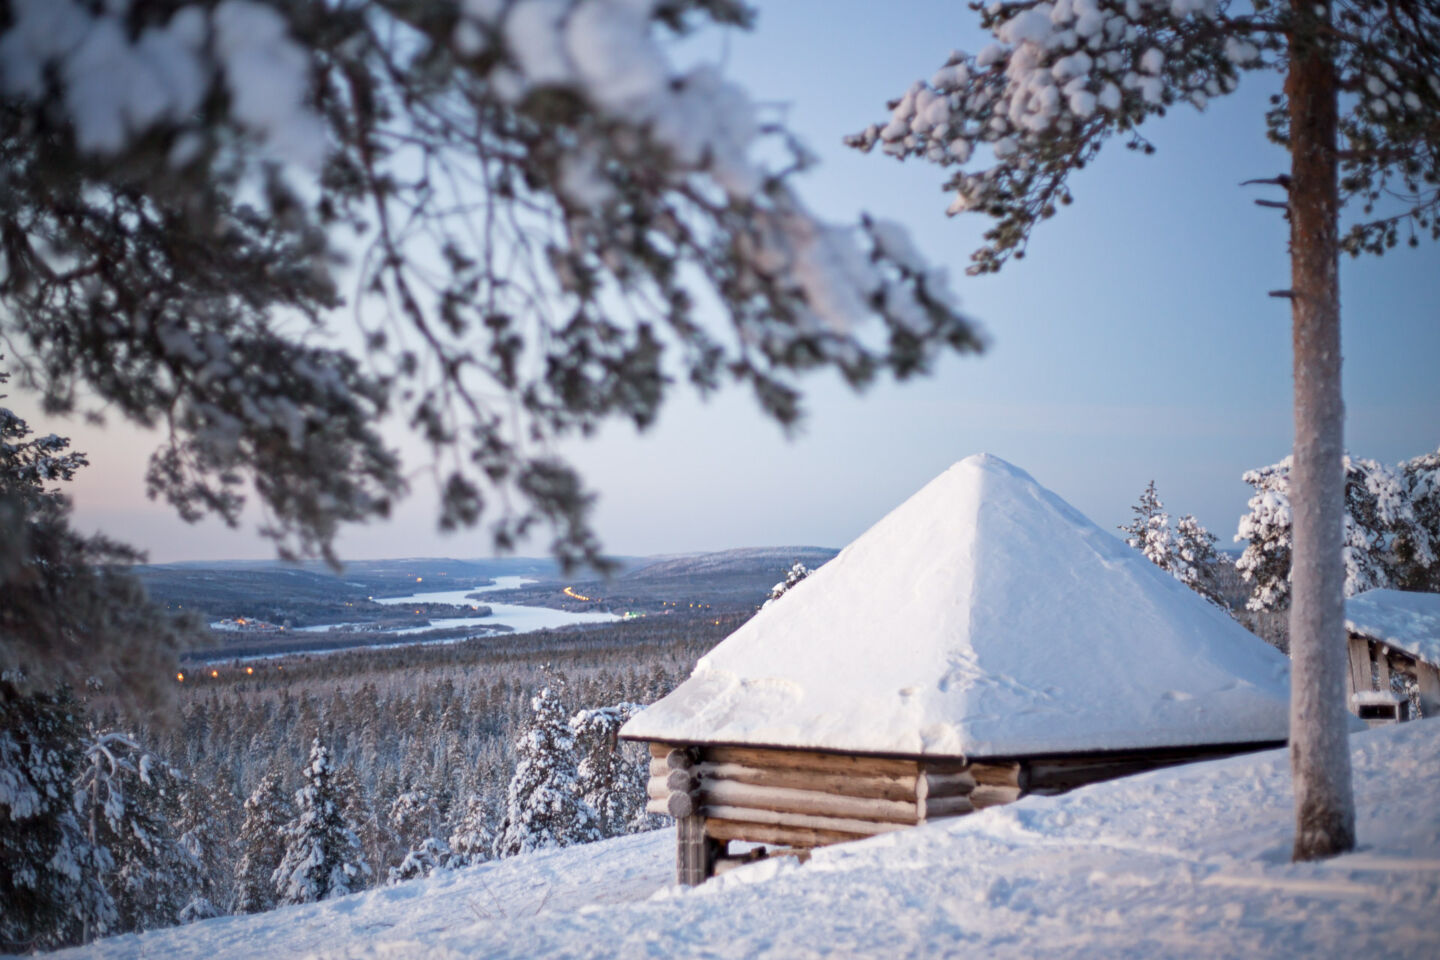 Winter wilderness in Rovaniemi, Finland